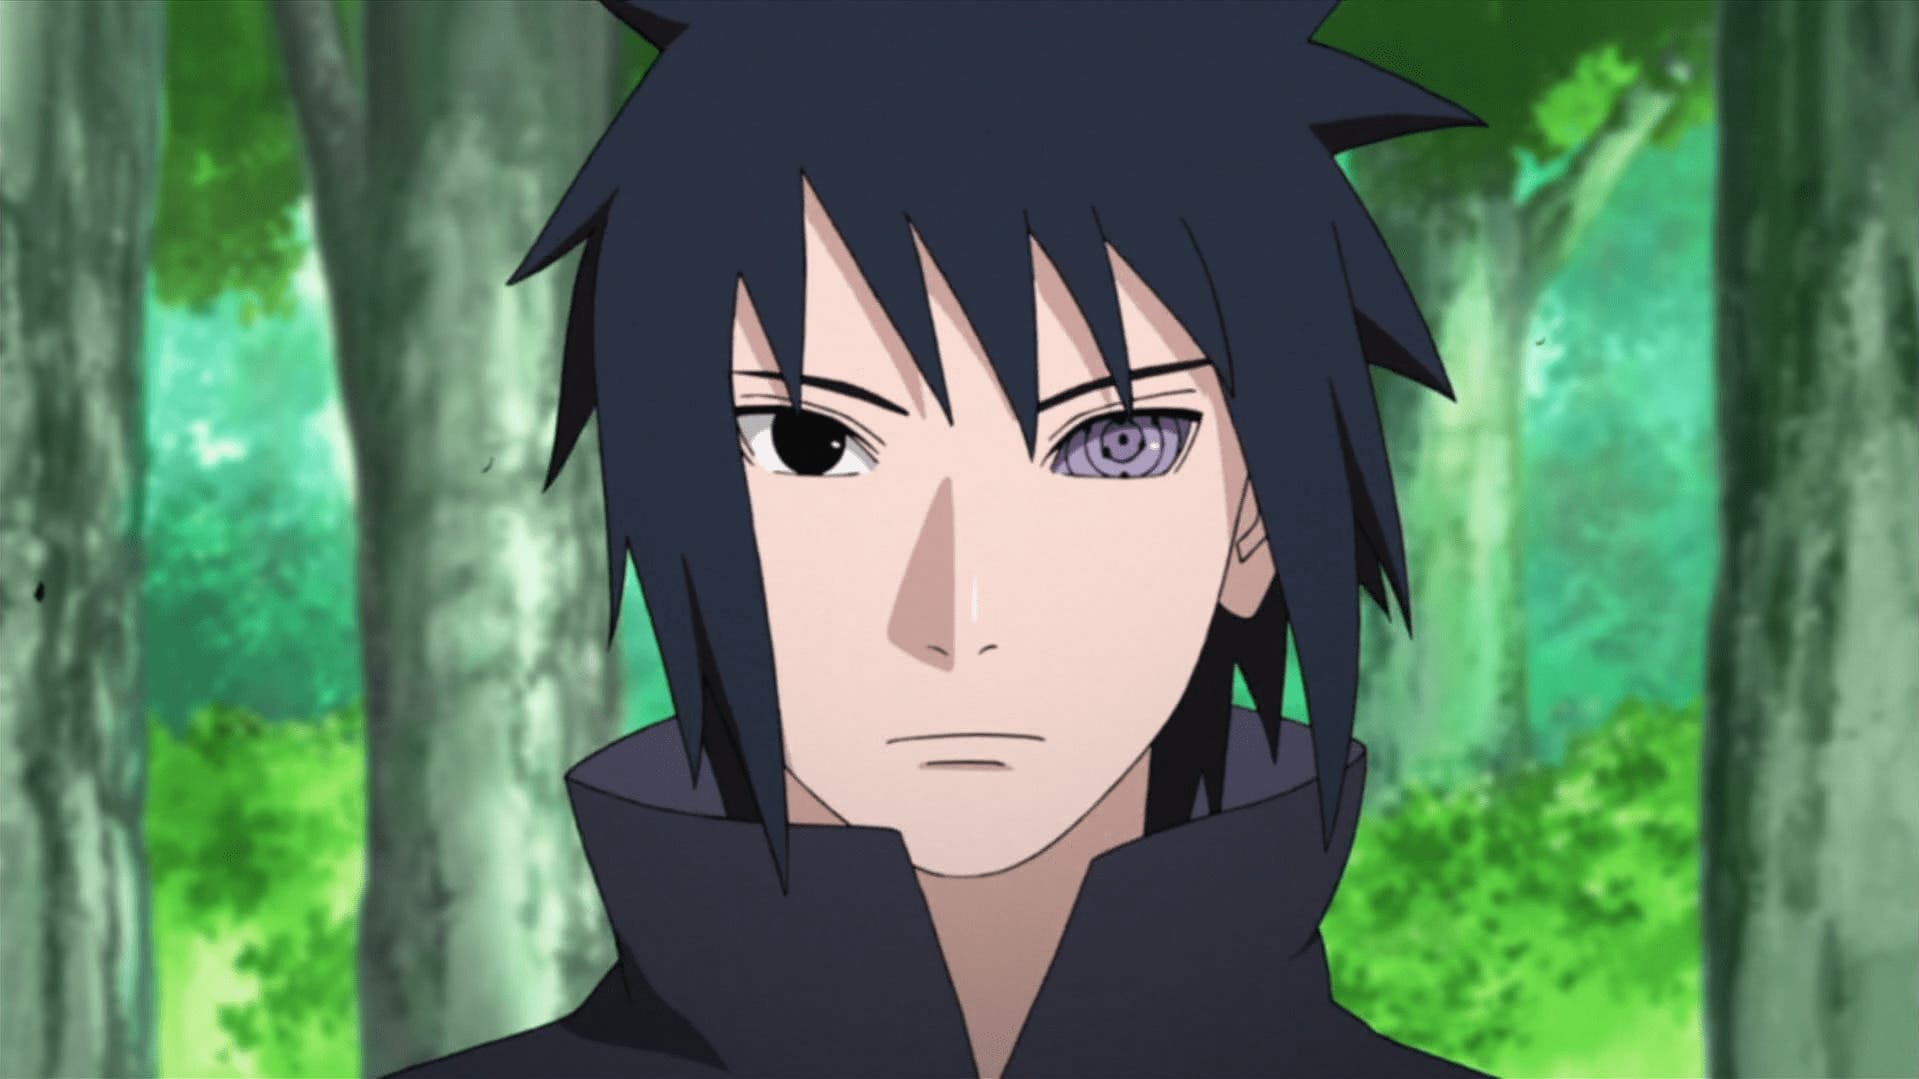 2. "Sasuke Uchiha" from Naruto - wide 8